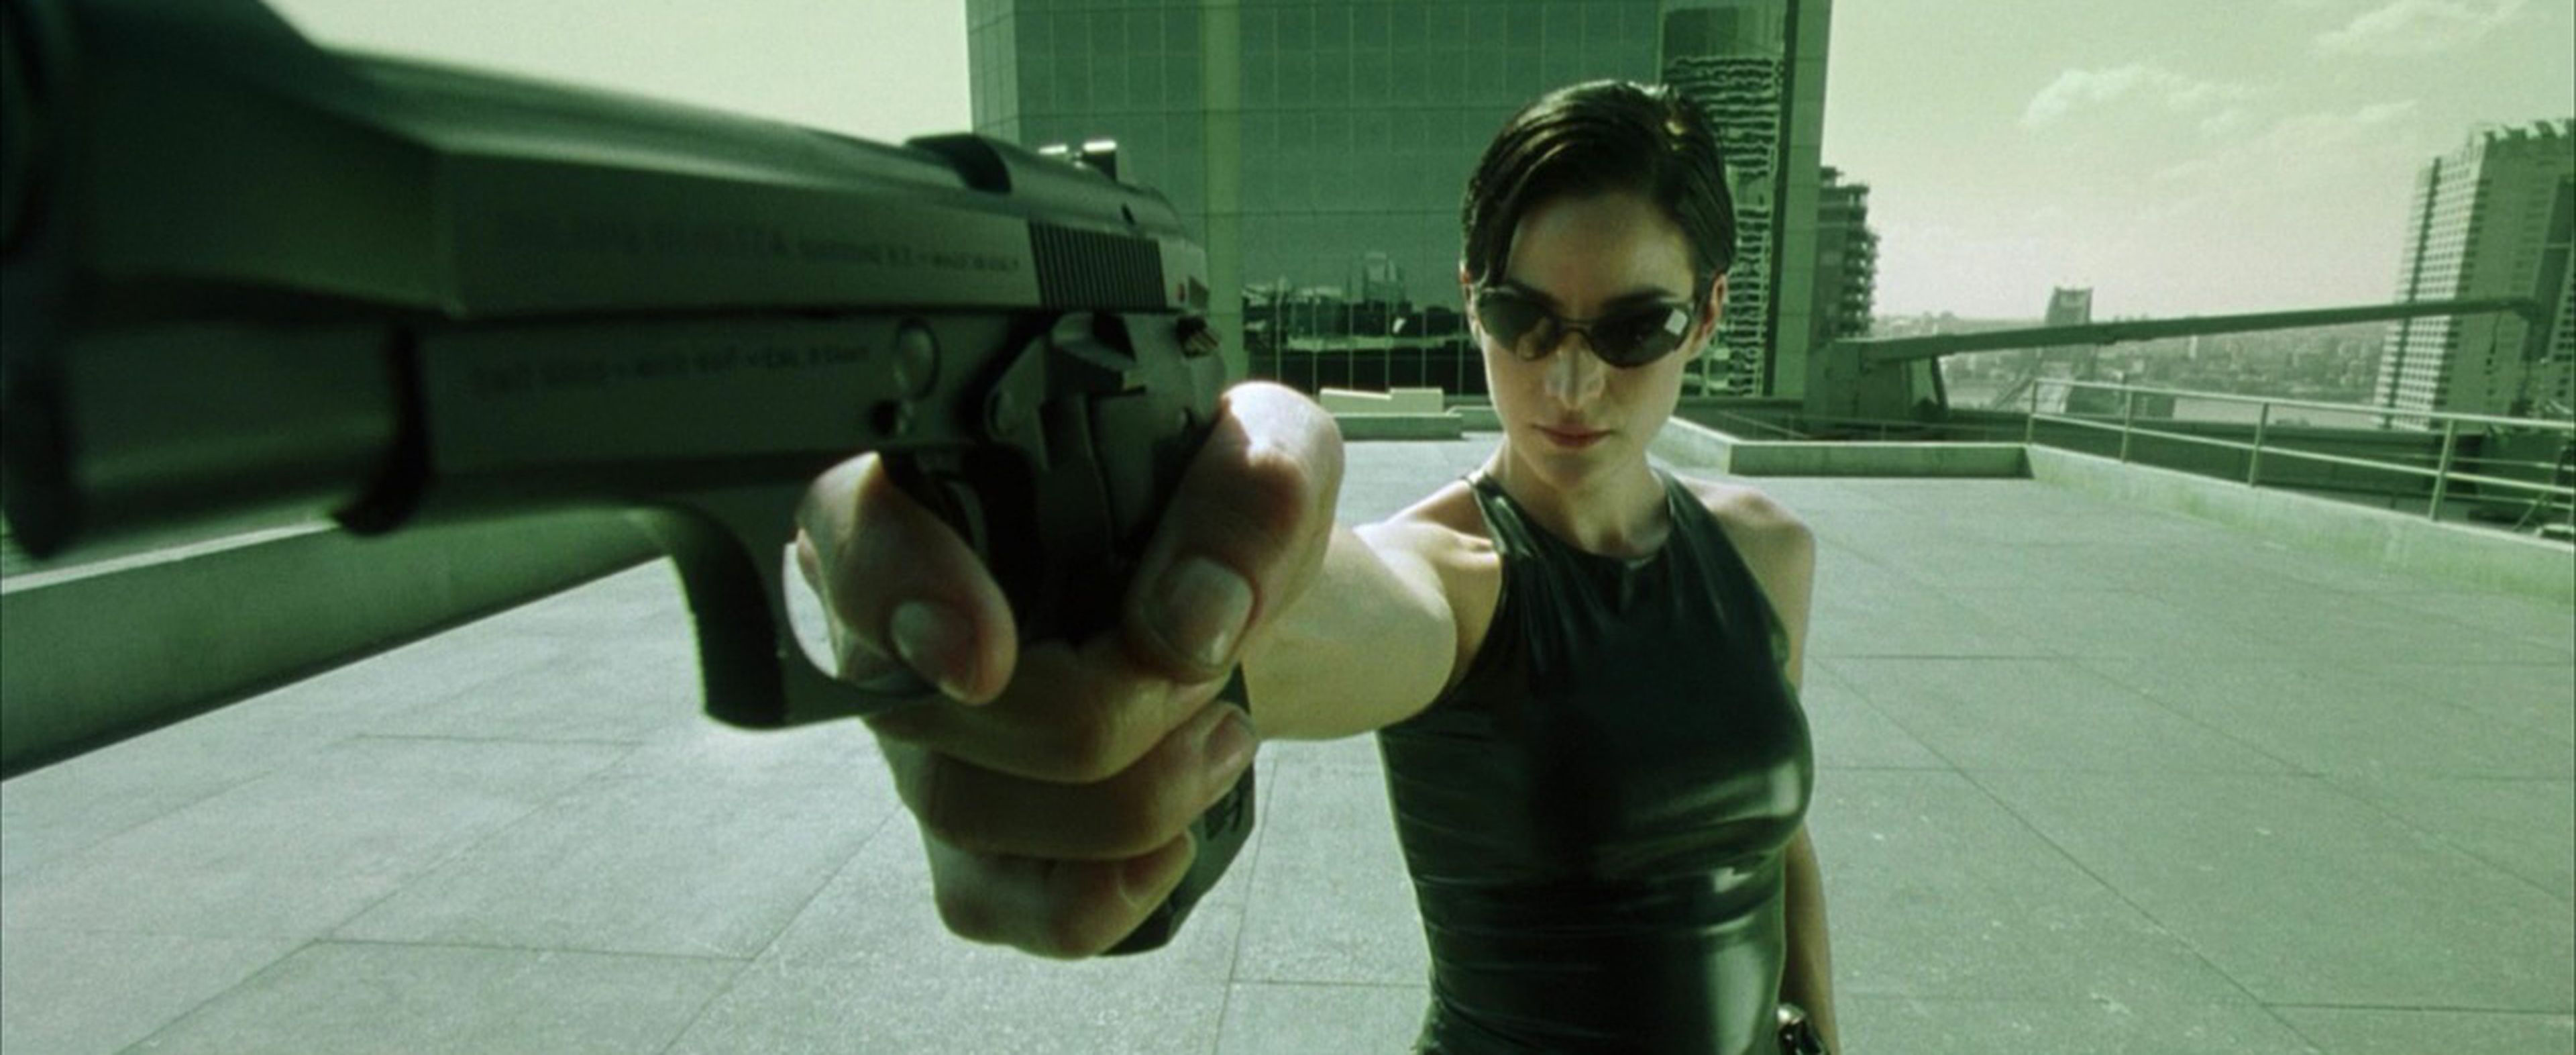 Cine de ciencia ficción: crítica de Matrix